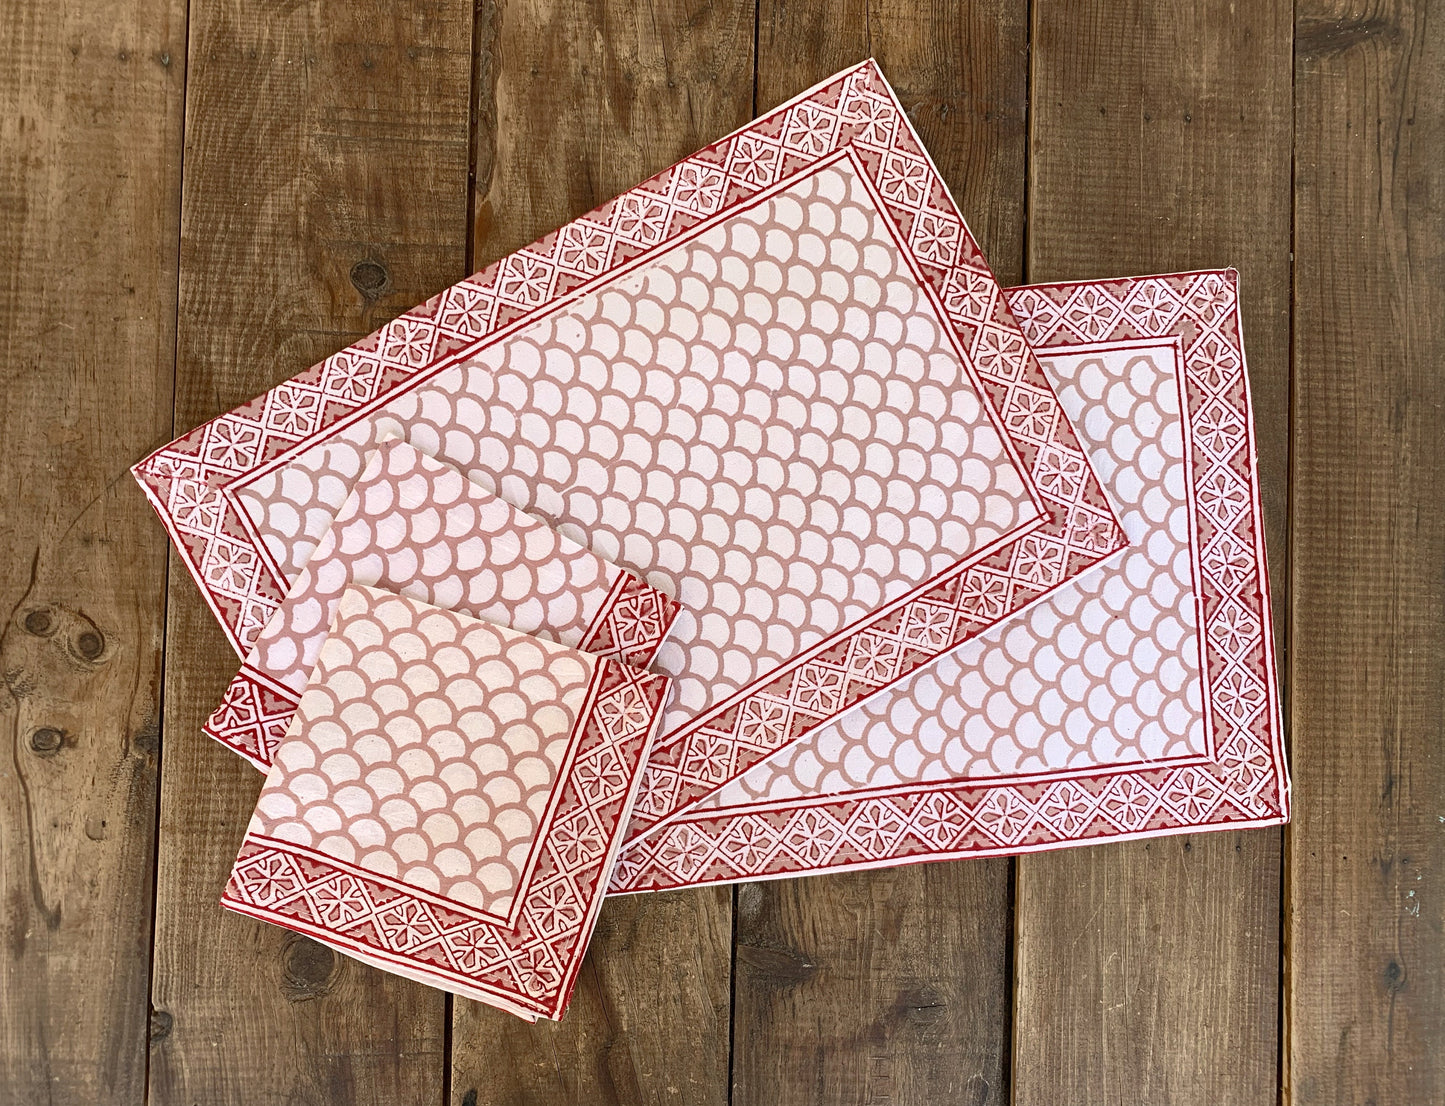 Mantel individual rectangular con servilletas · Algodón puro estampado block print artesanal en India · Juego de 2 · Escamas rojo y rosa